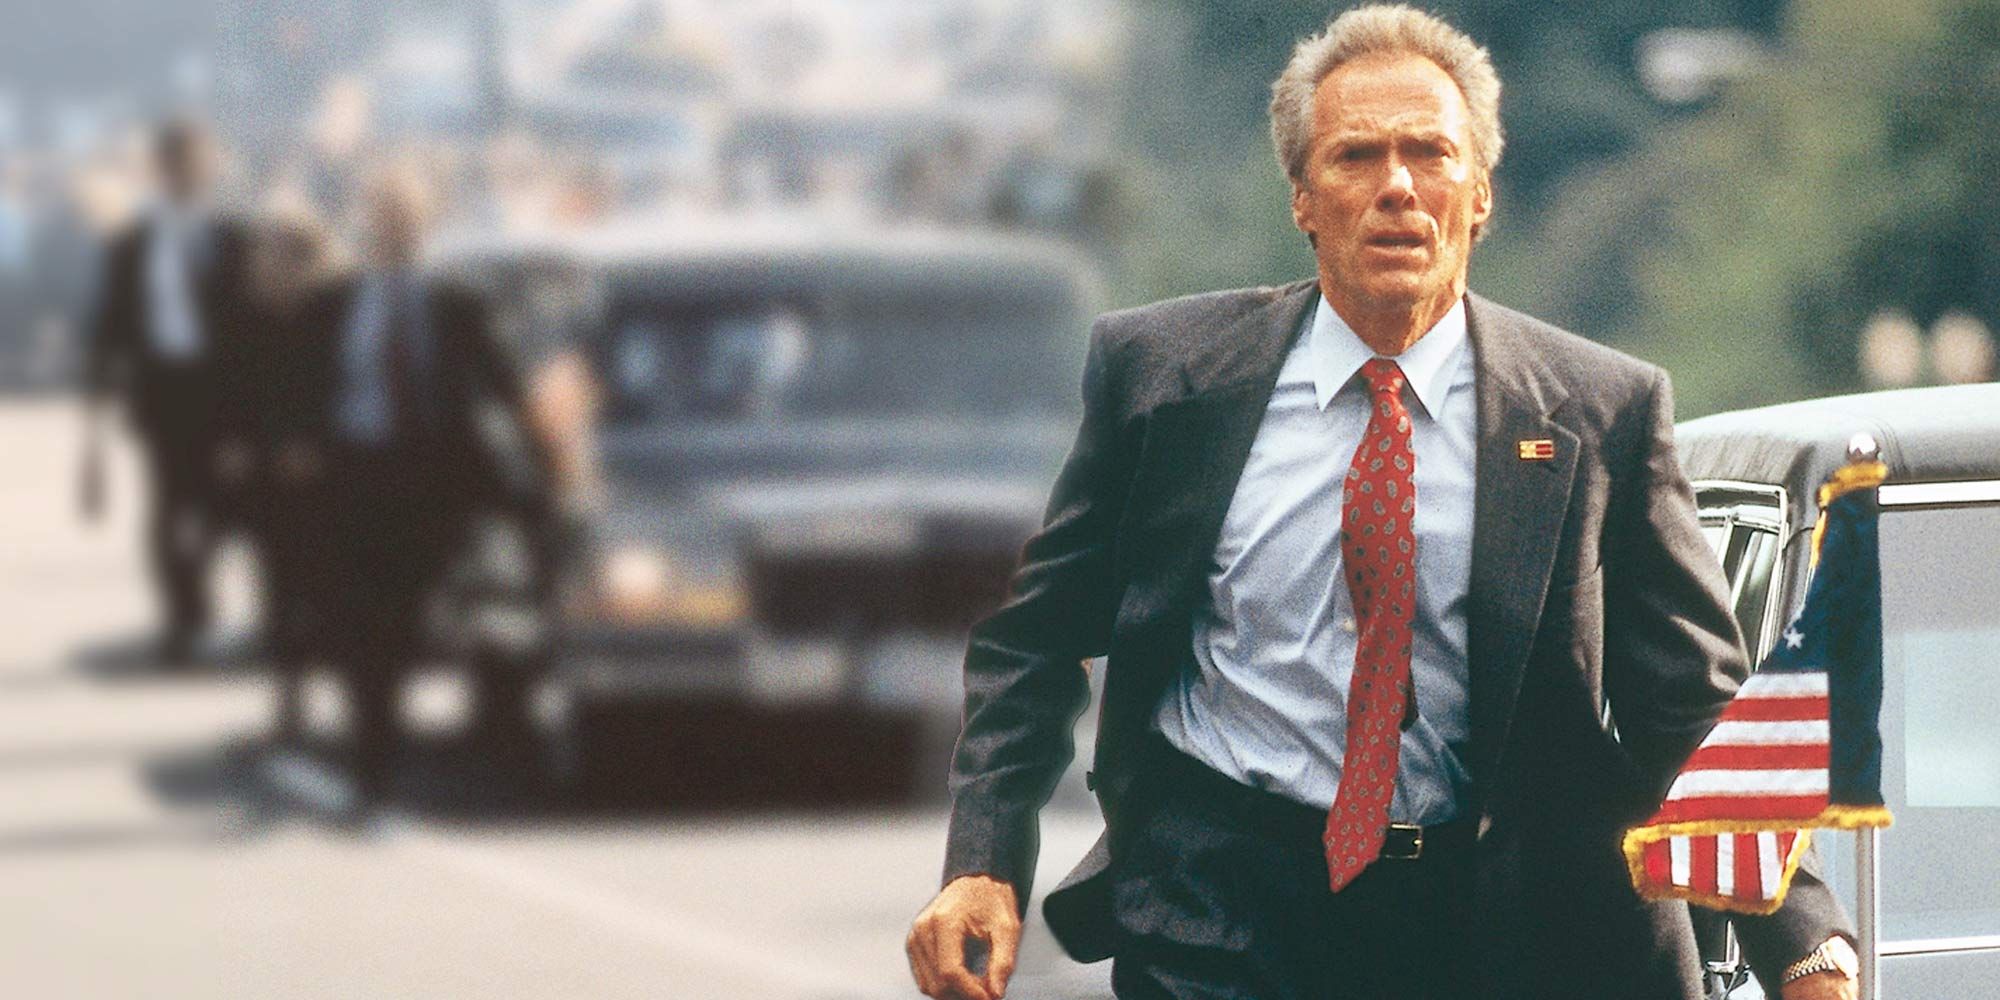 Clint Eastwood walking alongside a motorcade in In the Line of Fire